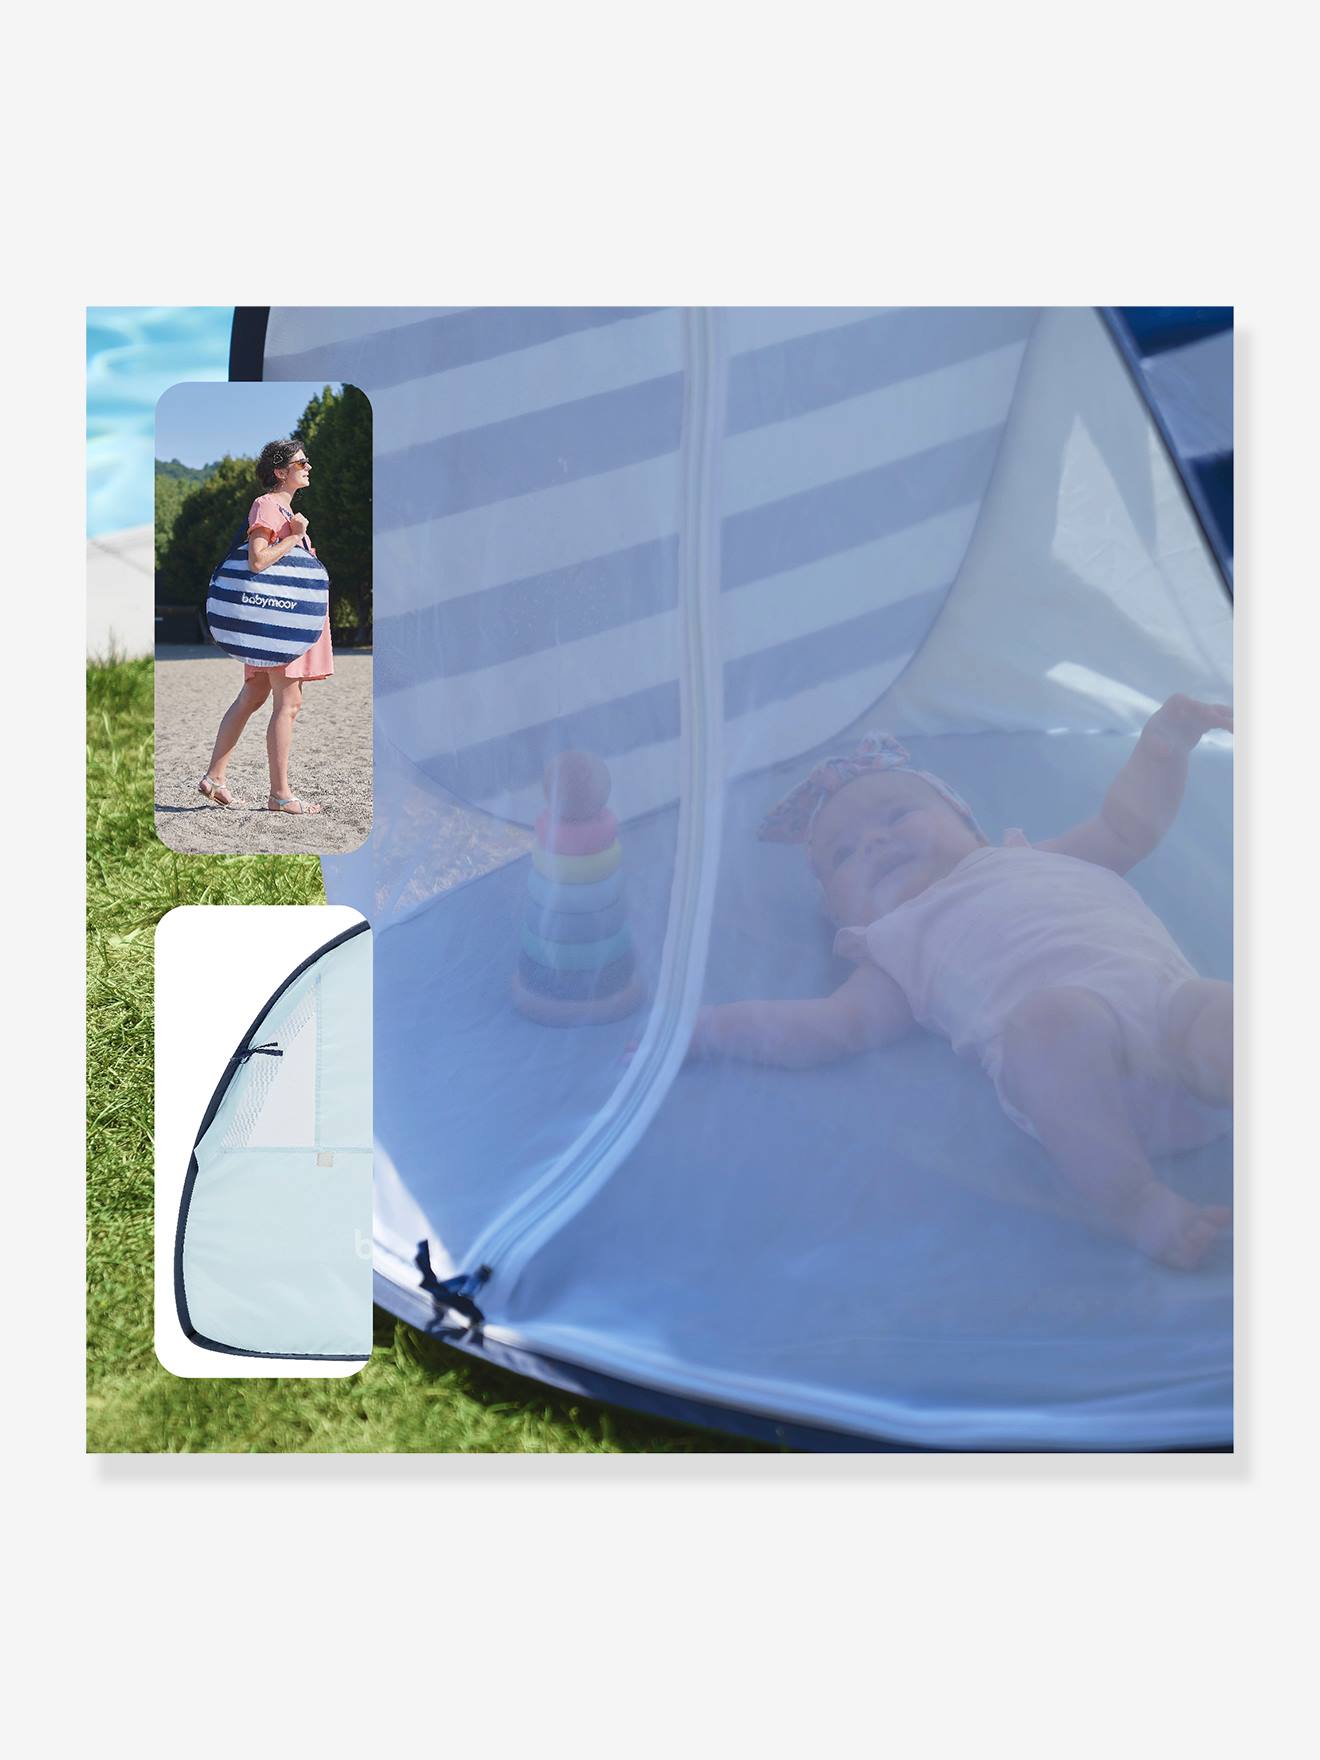 Tente anti-UV pare-soleil escamotable pour enfants Babymoov